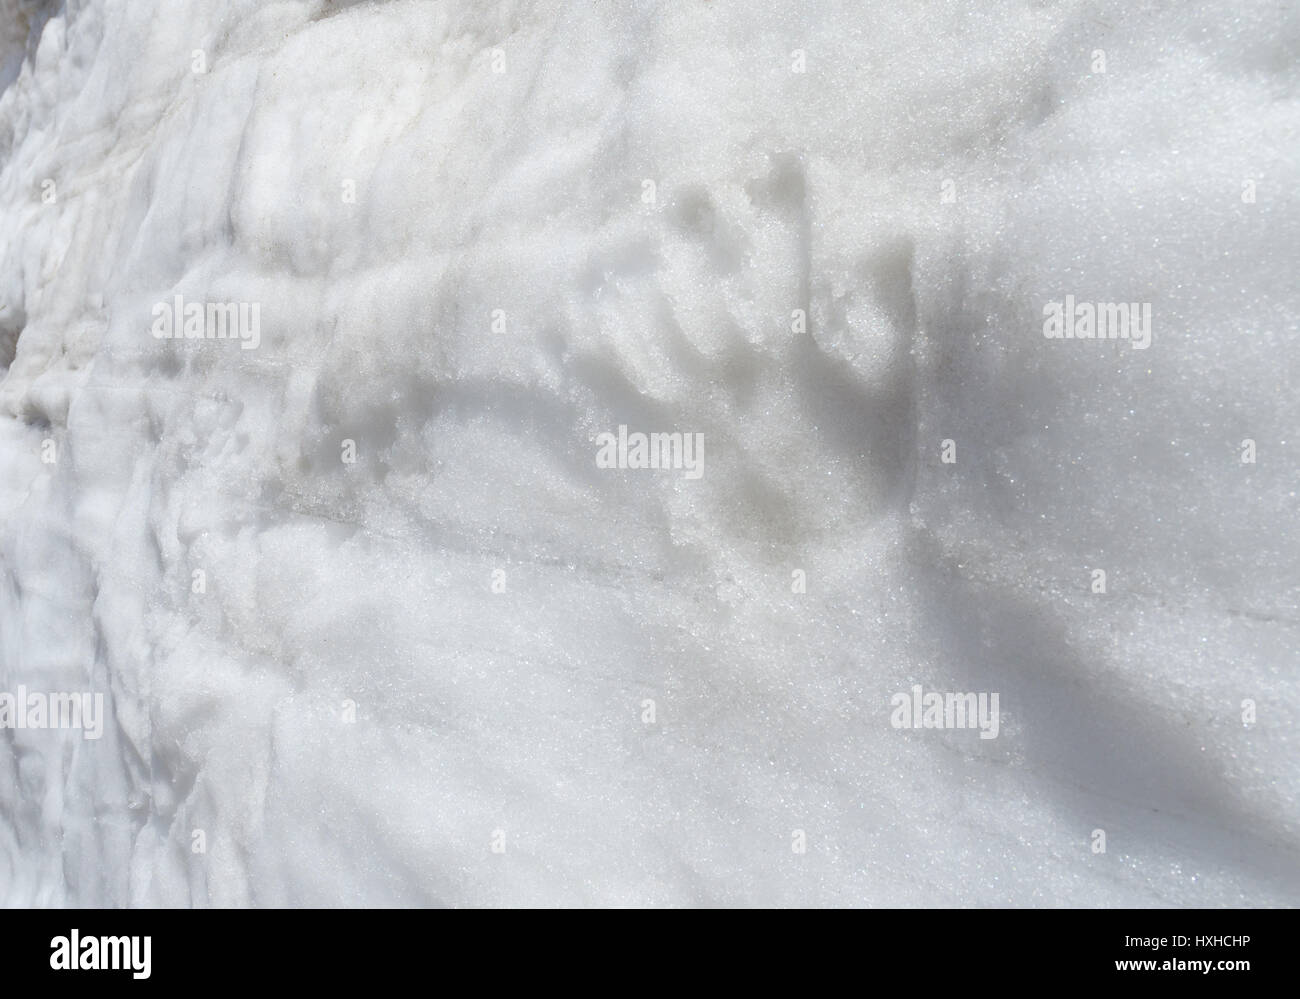 Menschliche Hand druckt auf den weißen Schnee-Wand Stockfoto